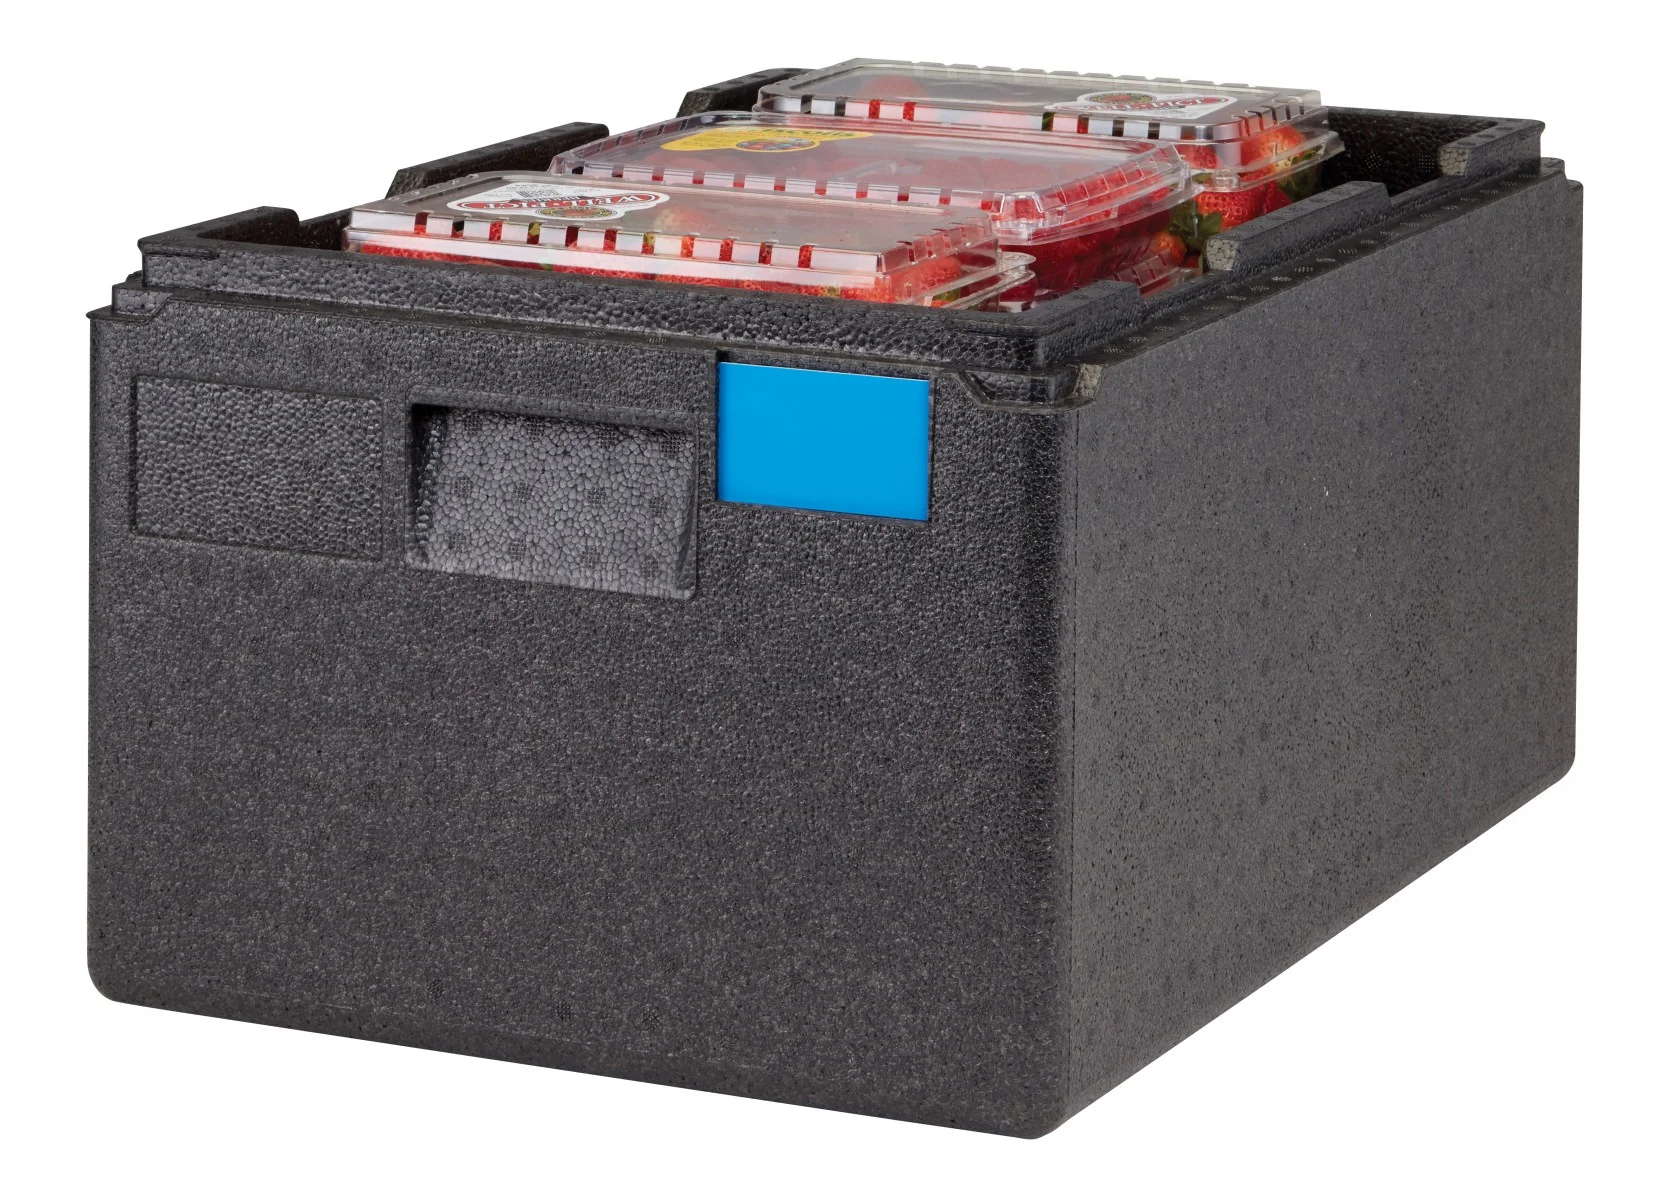 Cambro Cam GoBox EPP Üstten Yüklemeli Gıda Taşıyıcı - Thermobox - 20 cm Derinliğinde GN 1/1 Kap için ( EPP180X )